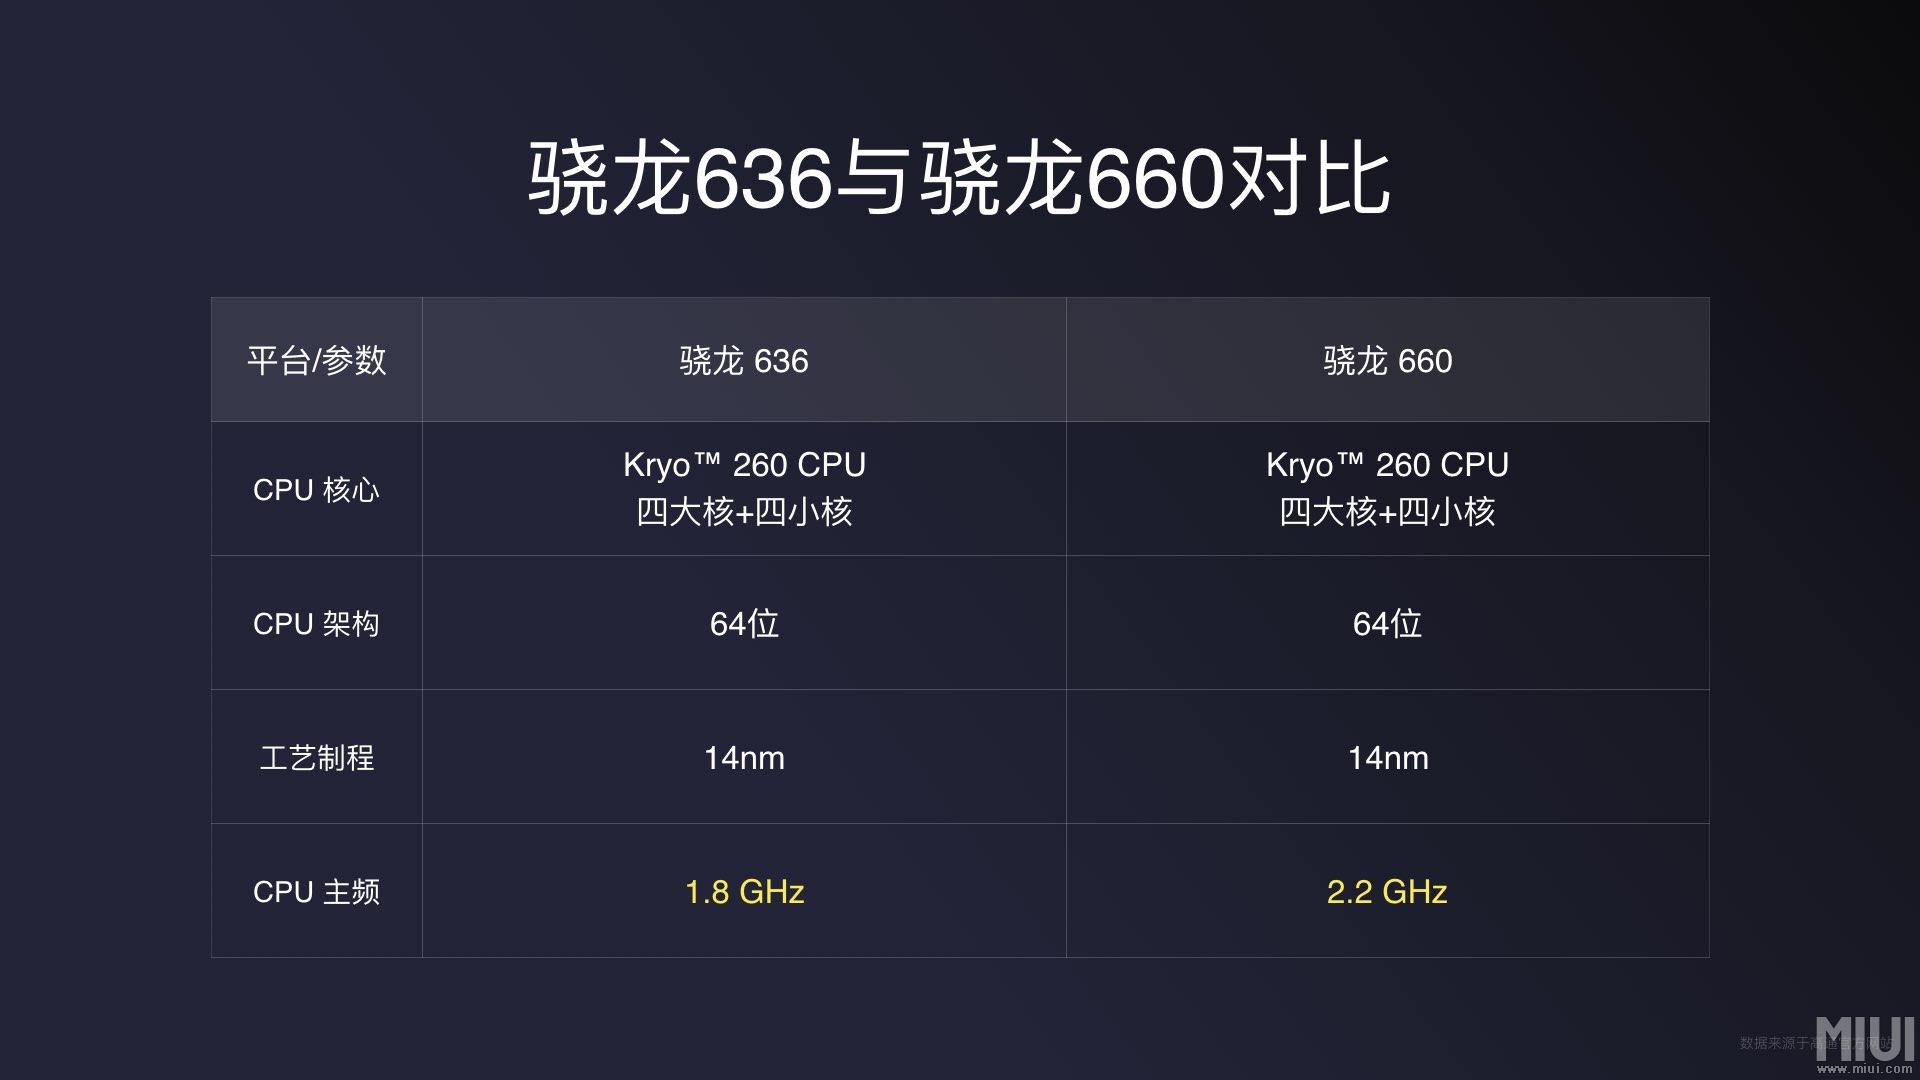 1099元红米Note 5发布 首发骁龙636前摄不输iPhone X